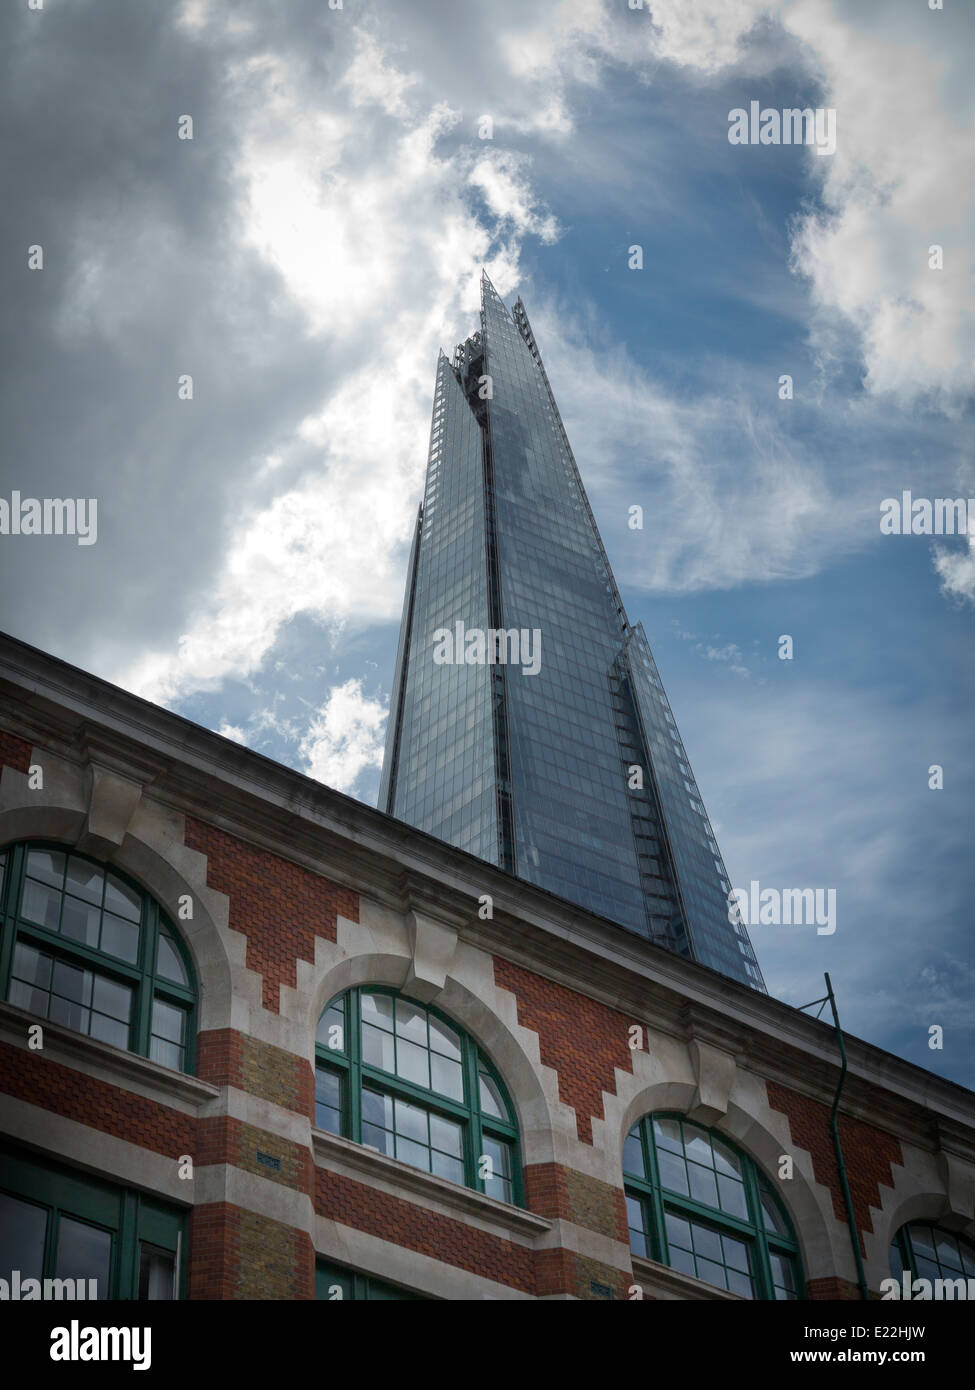 Un grand angle de l'Écharde de Londres contre un ciel bleu et blanc, avec l'immeuble en briques avec des fenêtres en premier plan Banque D'Images